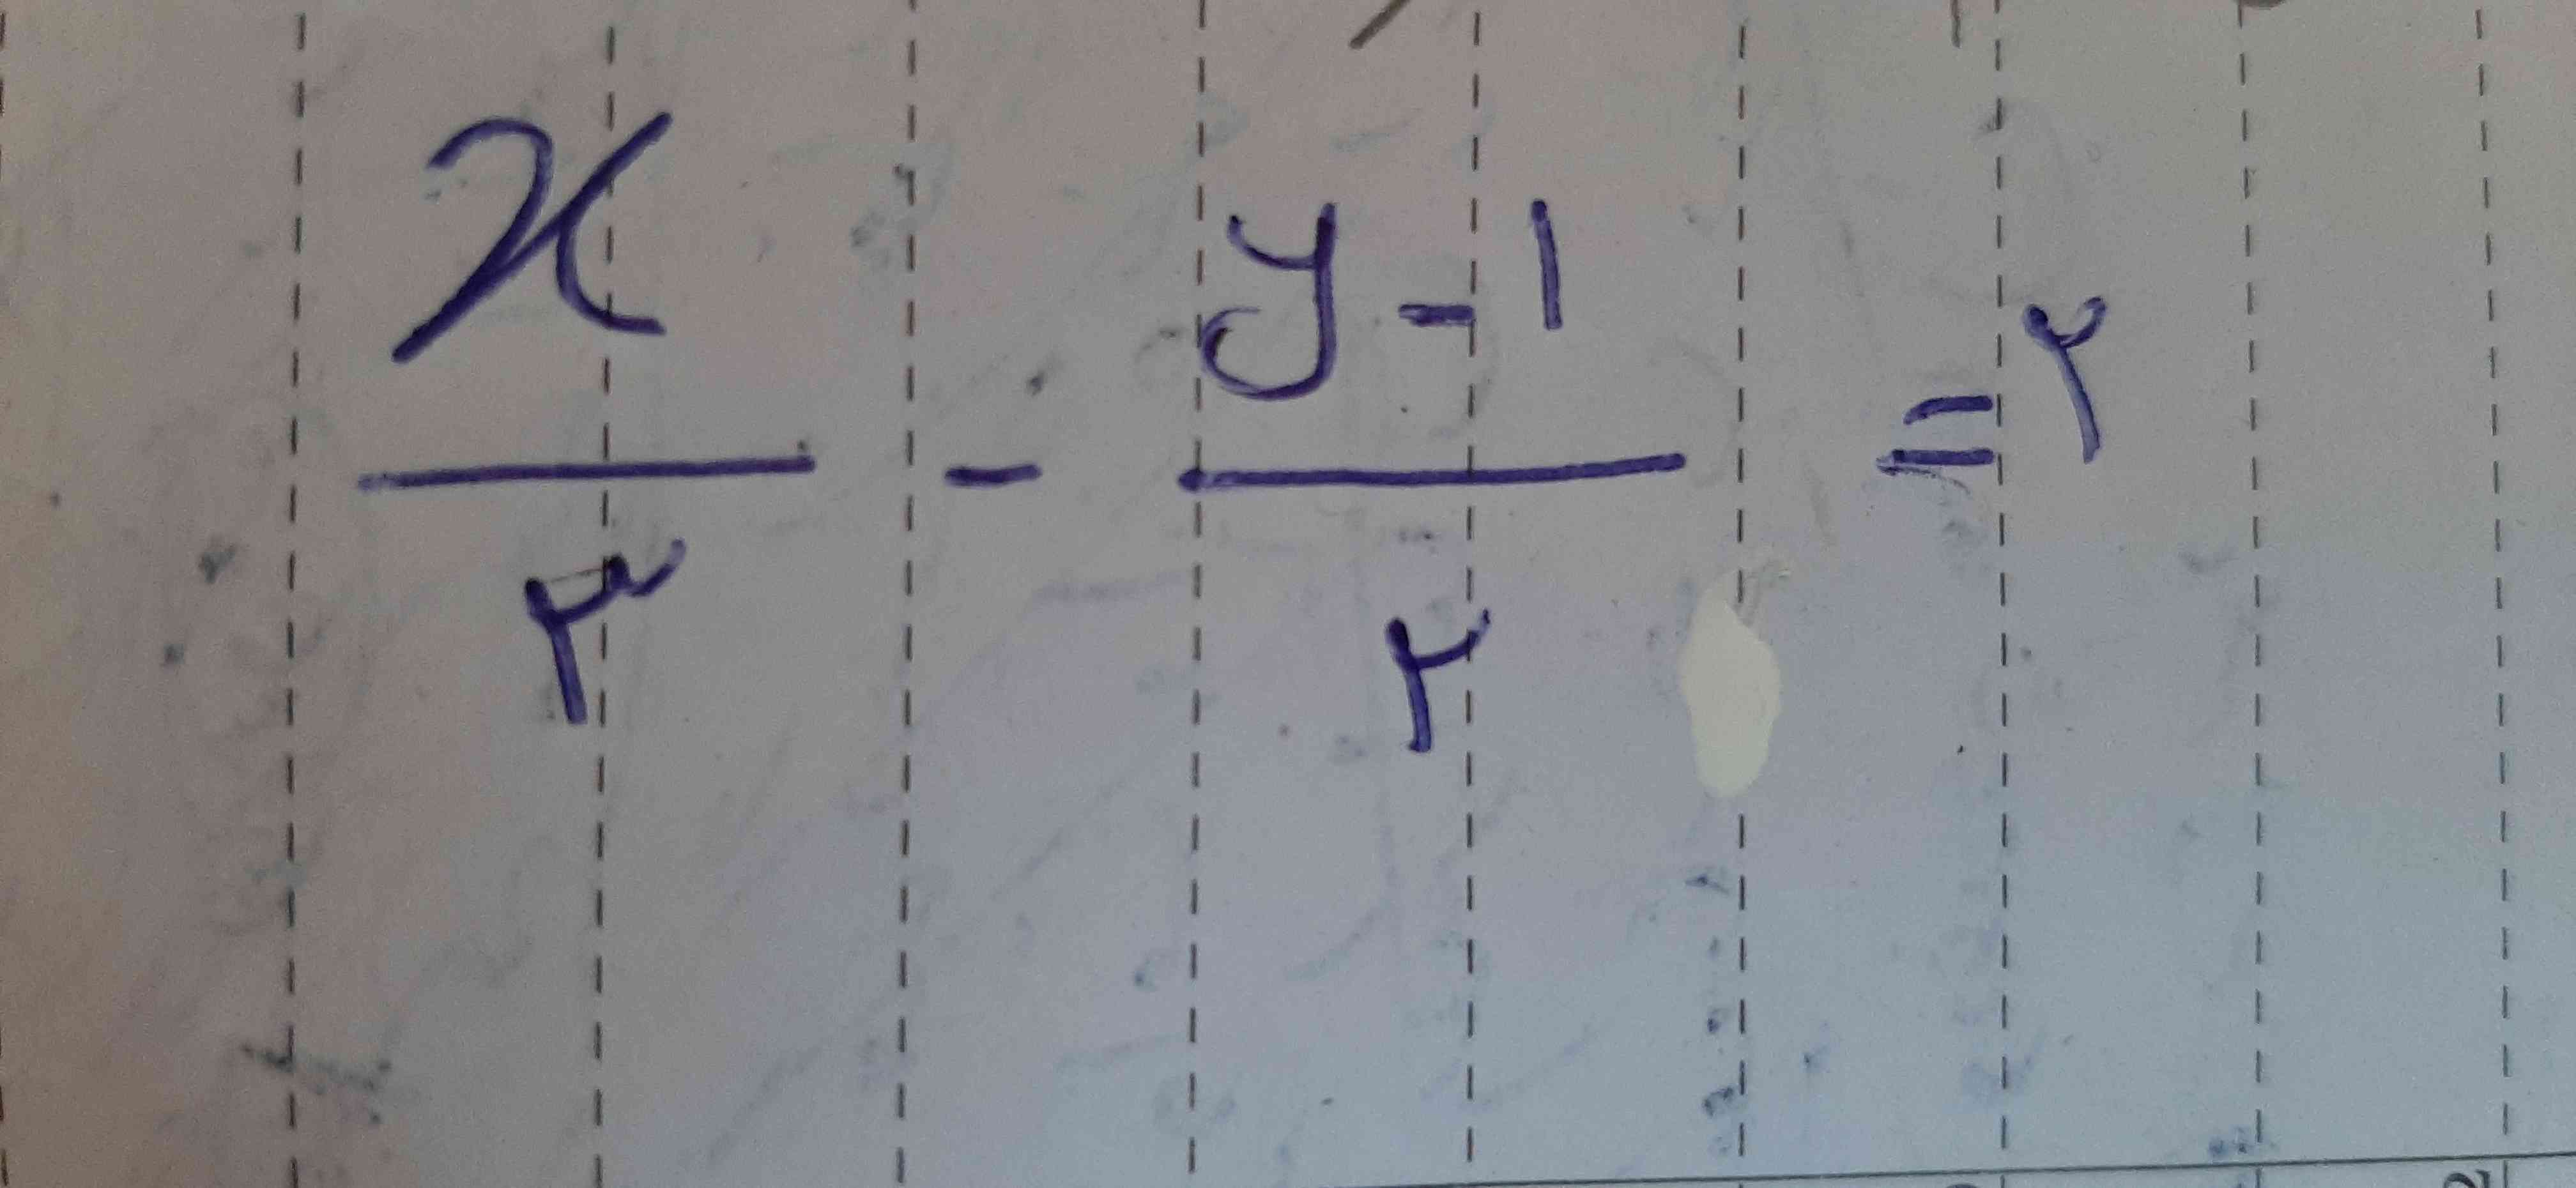 شیب خط و عرض از مبدا این معادله چیه؟؟
خواهشا سریع جواب بدید💖💖💖
مچکرم😍😍😍😍